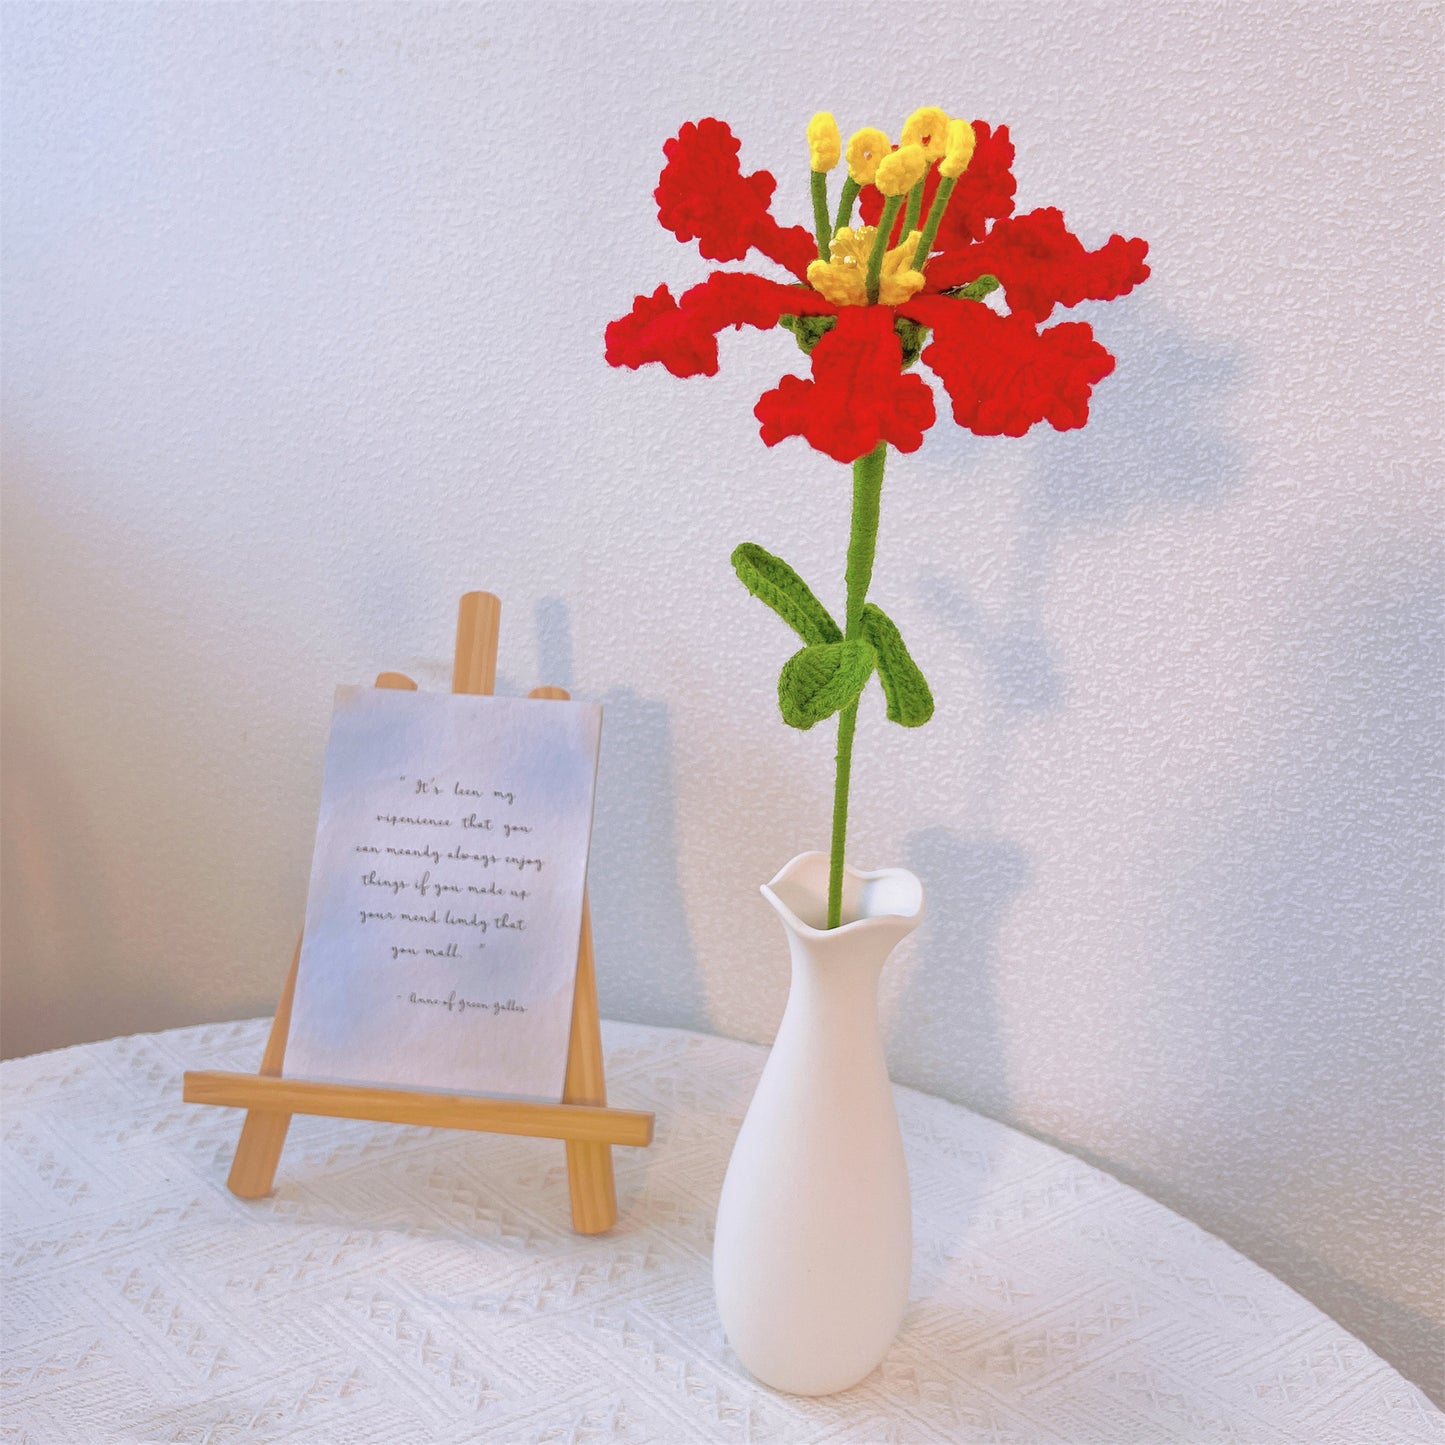 Kreppmyrten-Anhänger: Handgefertigter gehäkelter Kreppmyrten-Blumenstecker für eine farbenfrohe Gartendekoration